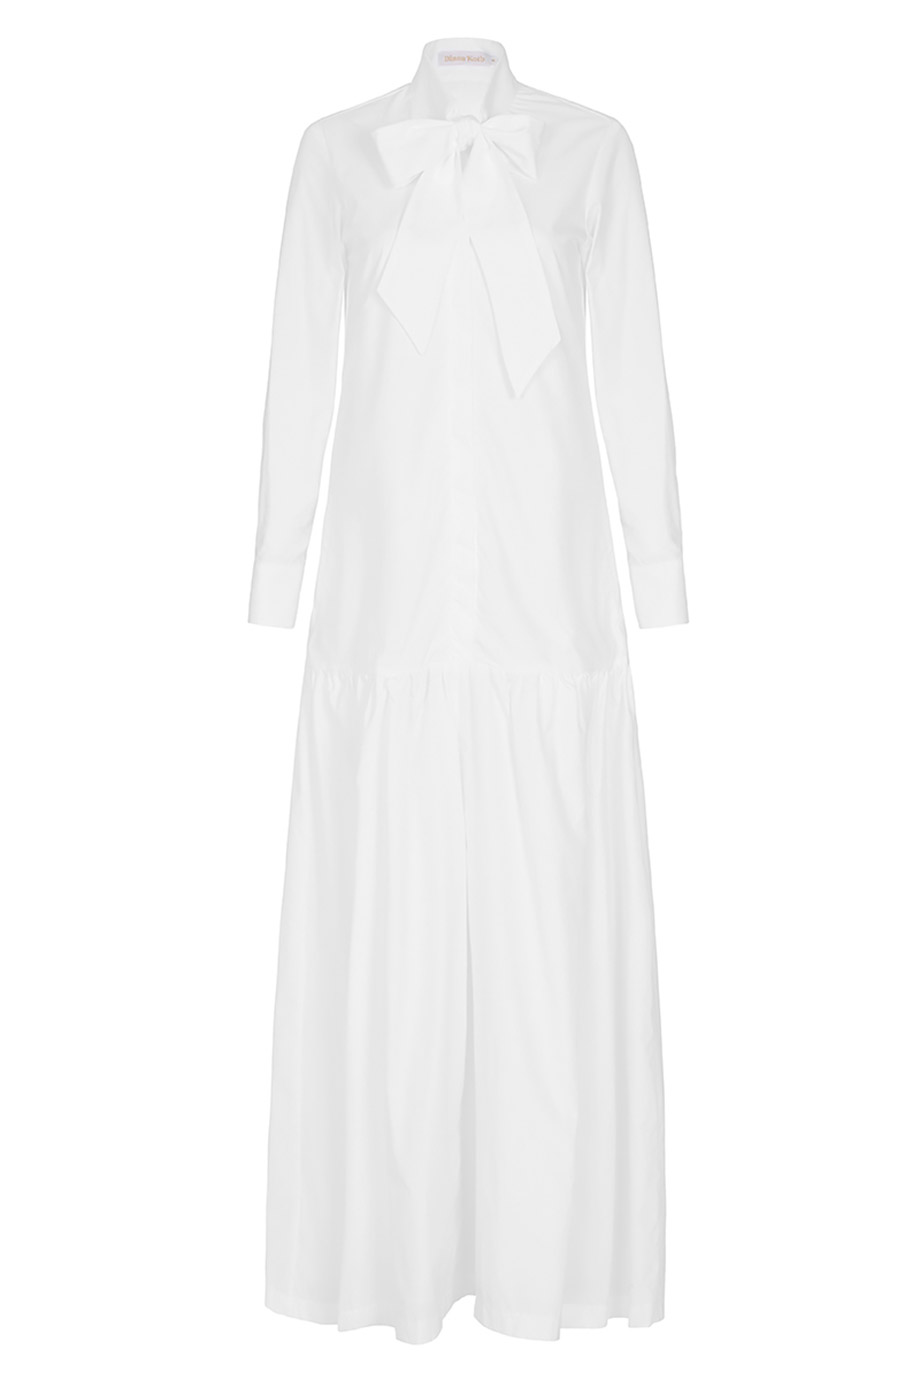 THE BARONESS DRESS - WHITE - Diana Kotb | Diana Kotb